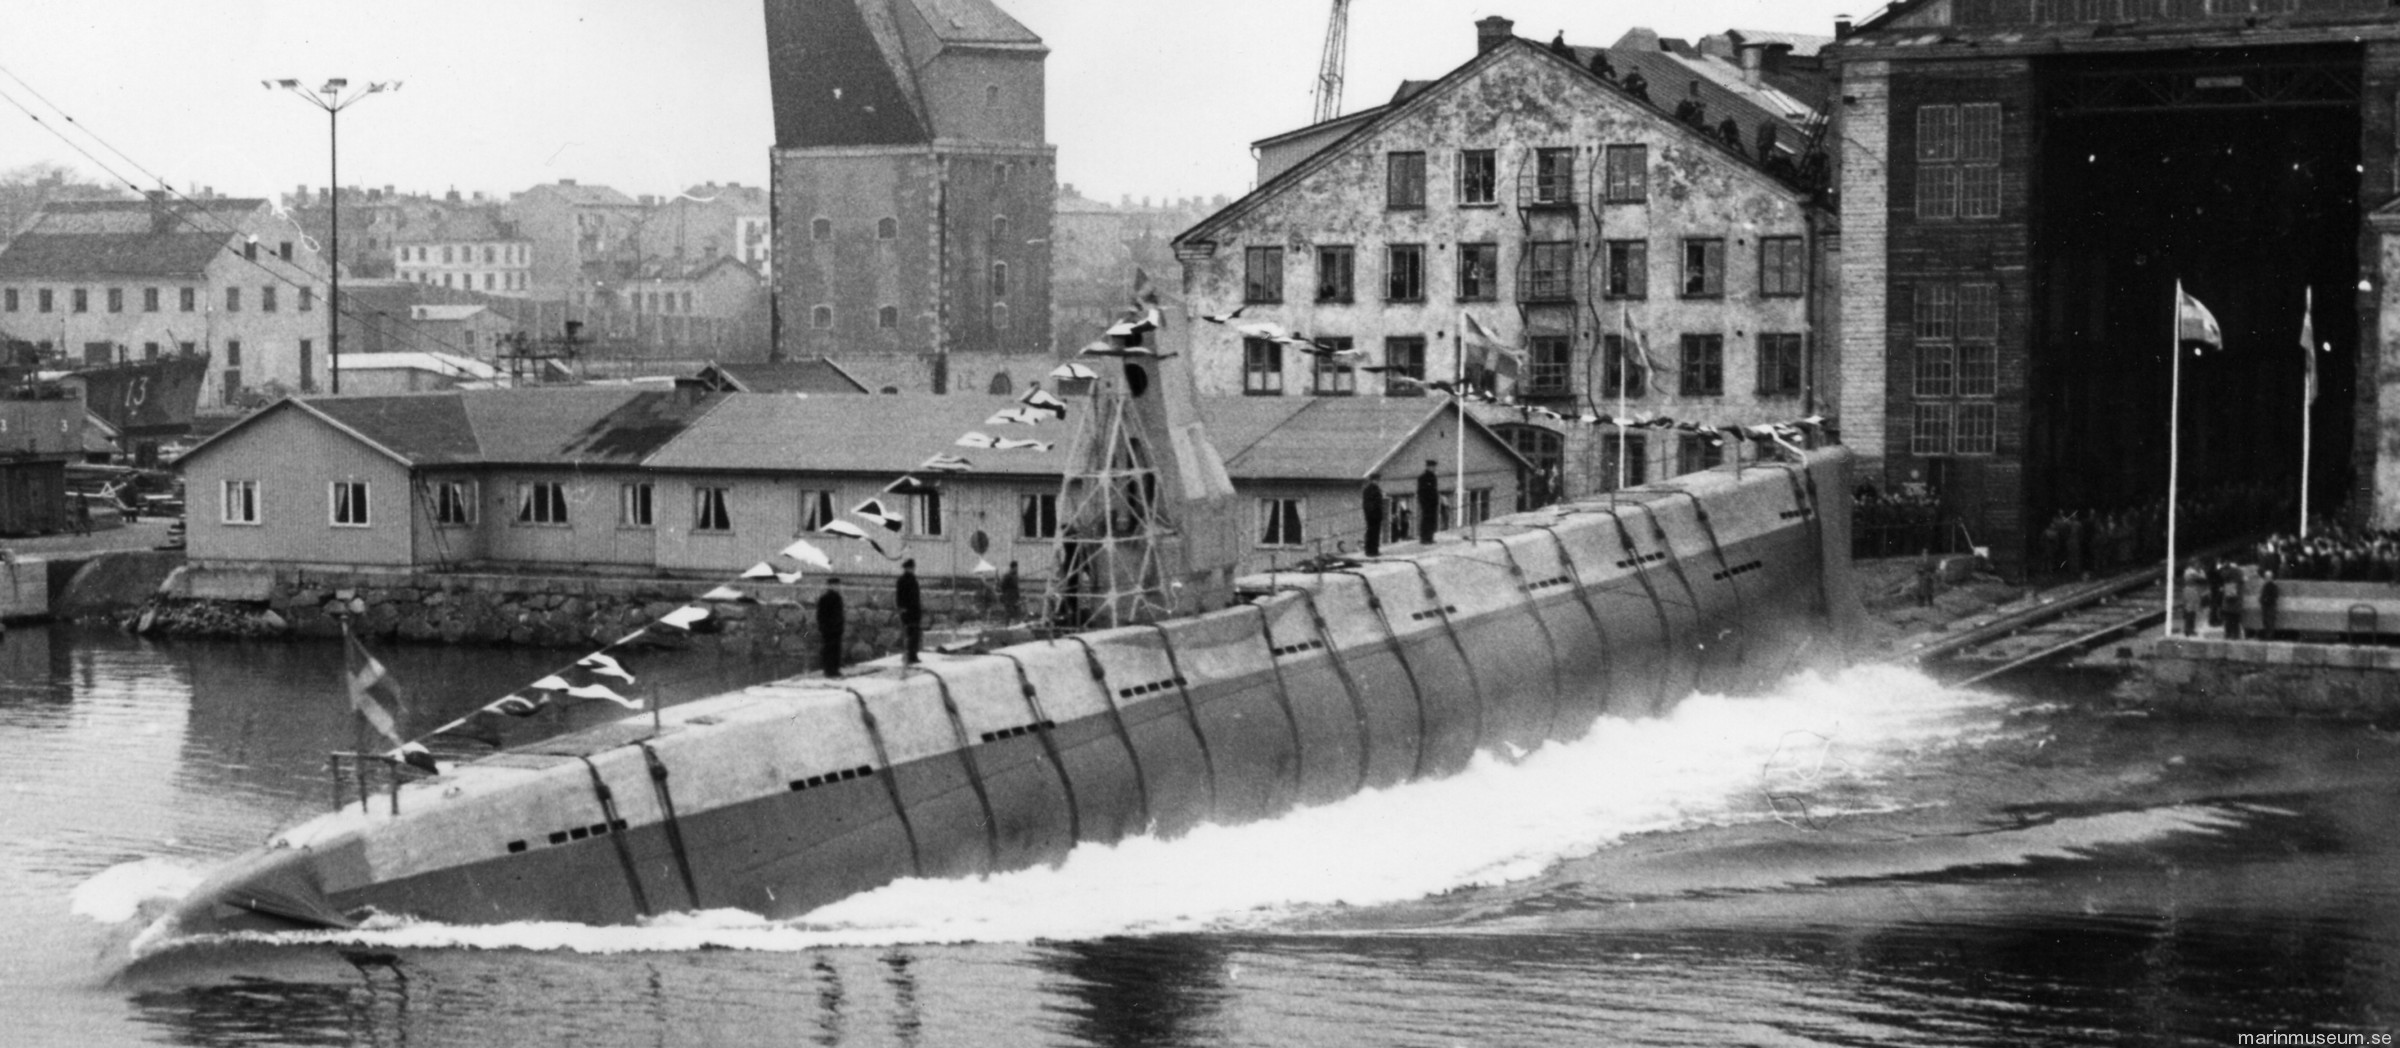 hms hswms illern hajen a10 class attack submarine ubåt swedish navy svenska marinen försvarsmakten 05